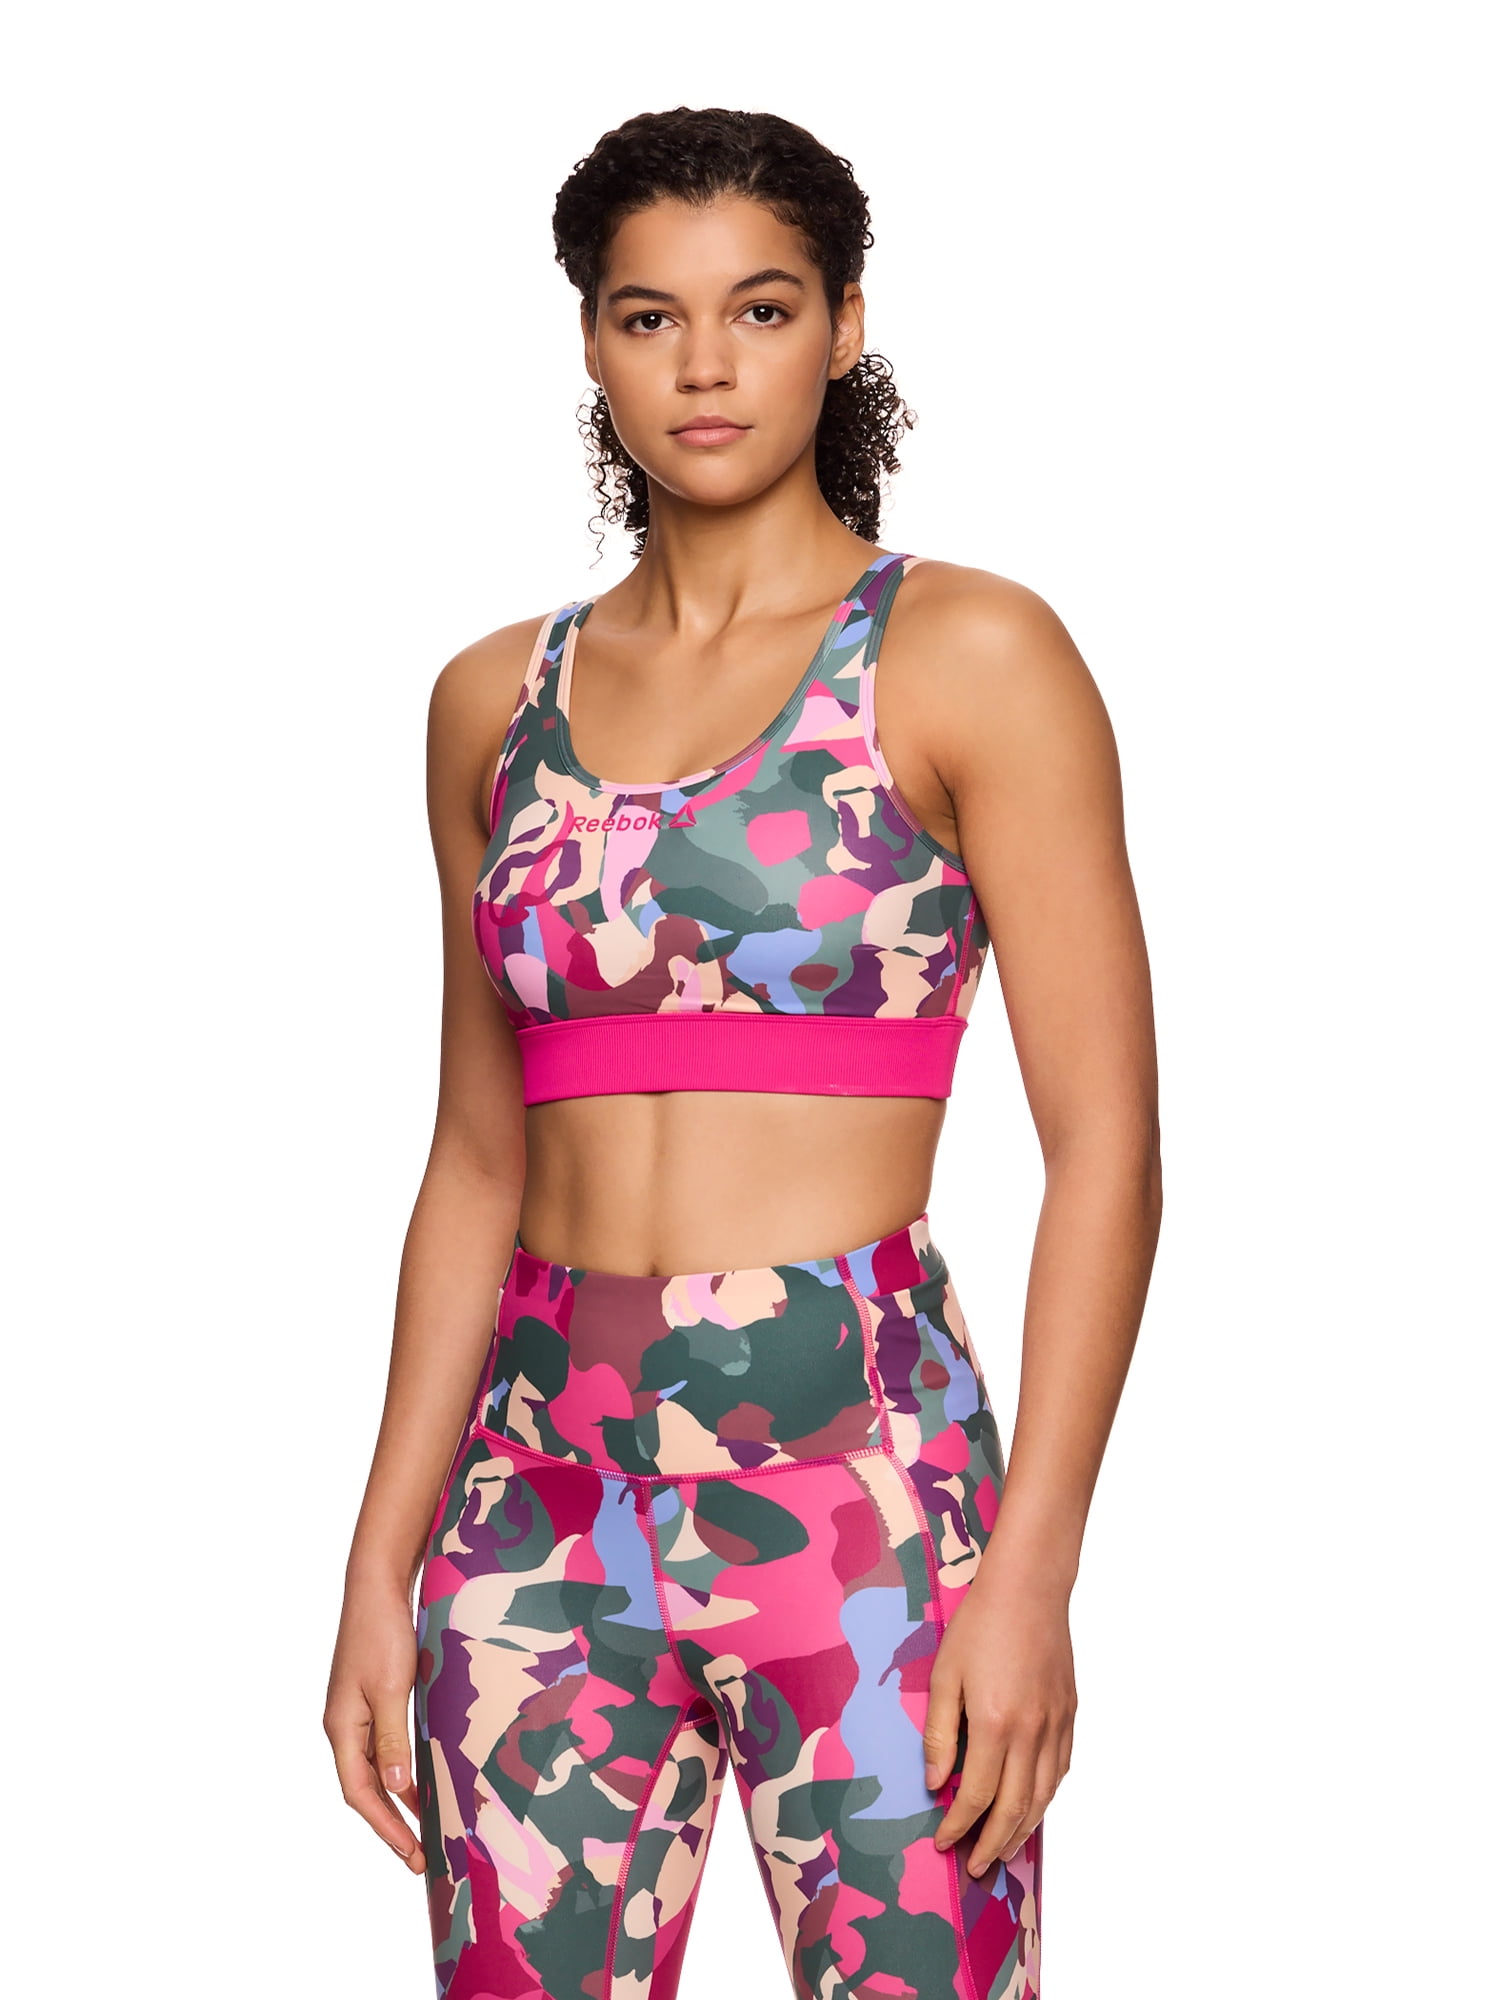 Love & Sports Women's Kiki Colorblocked Sports Bra, Sizes XS-XXXL 